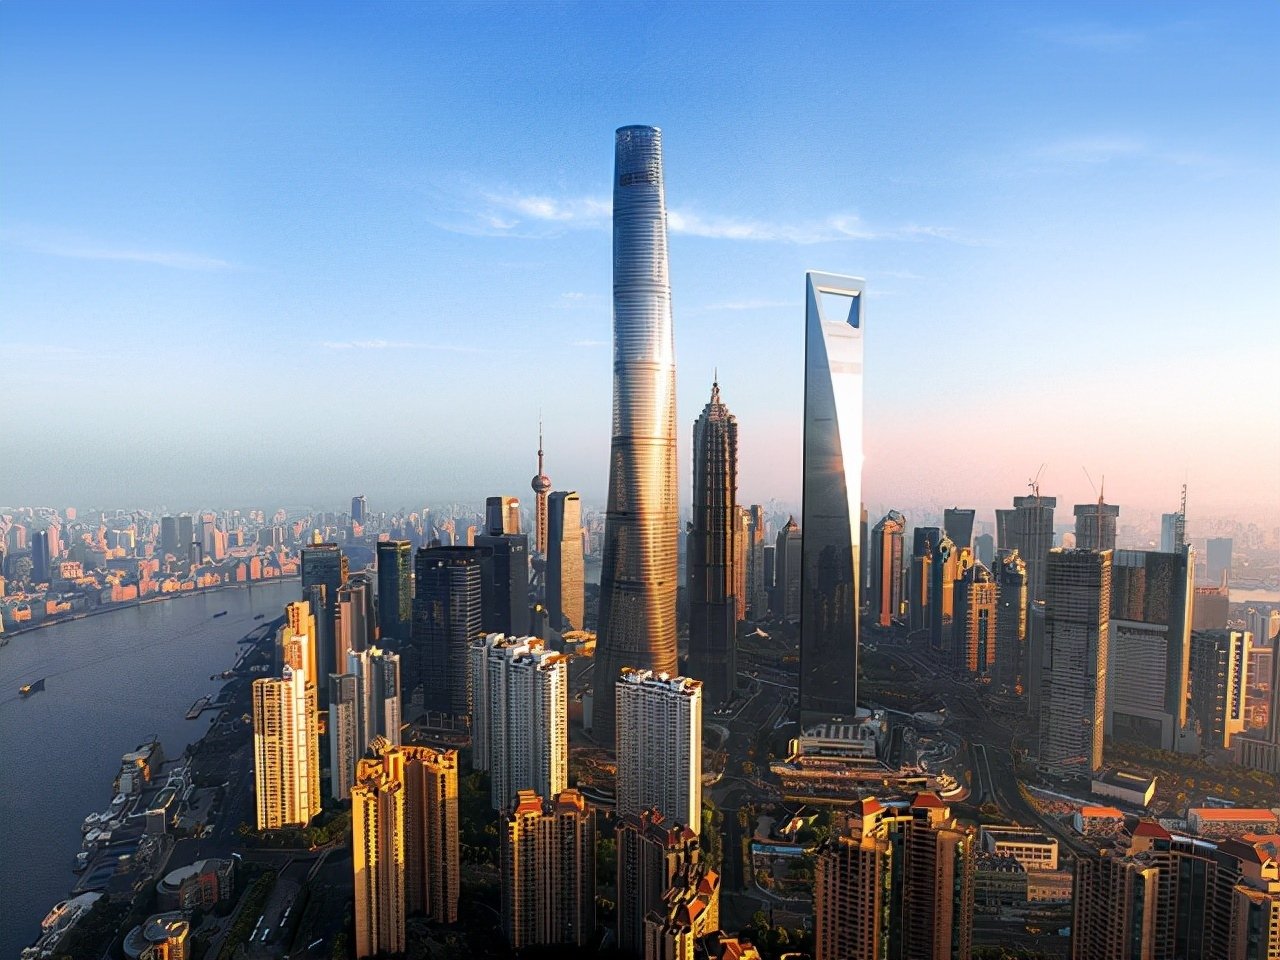 Tòa nhà cao nhất Trung Quốc: Thiết kế phức tạp, hơn 100 thang máy siêu tốc - Ảnh 4.